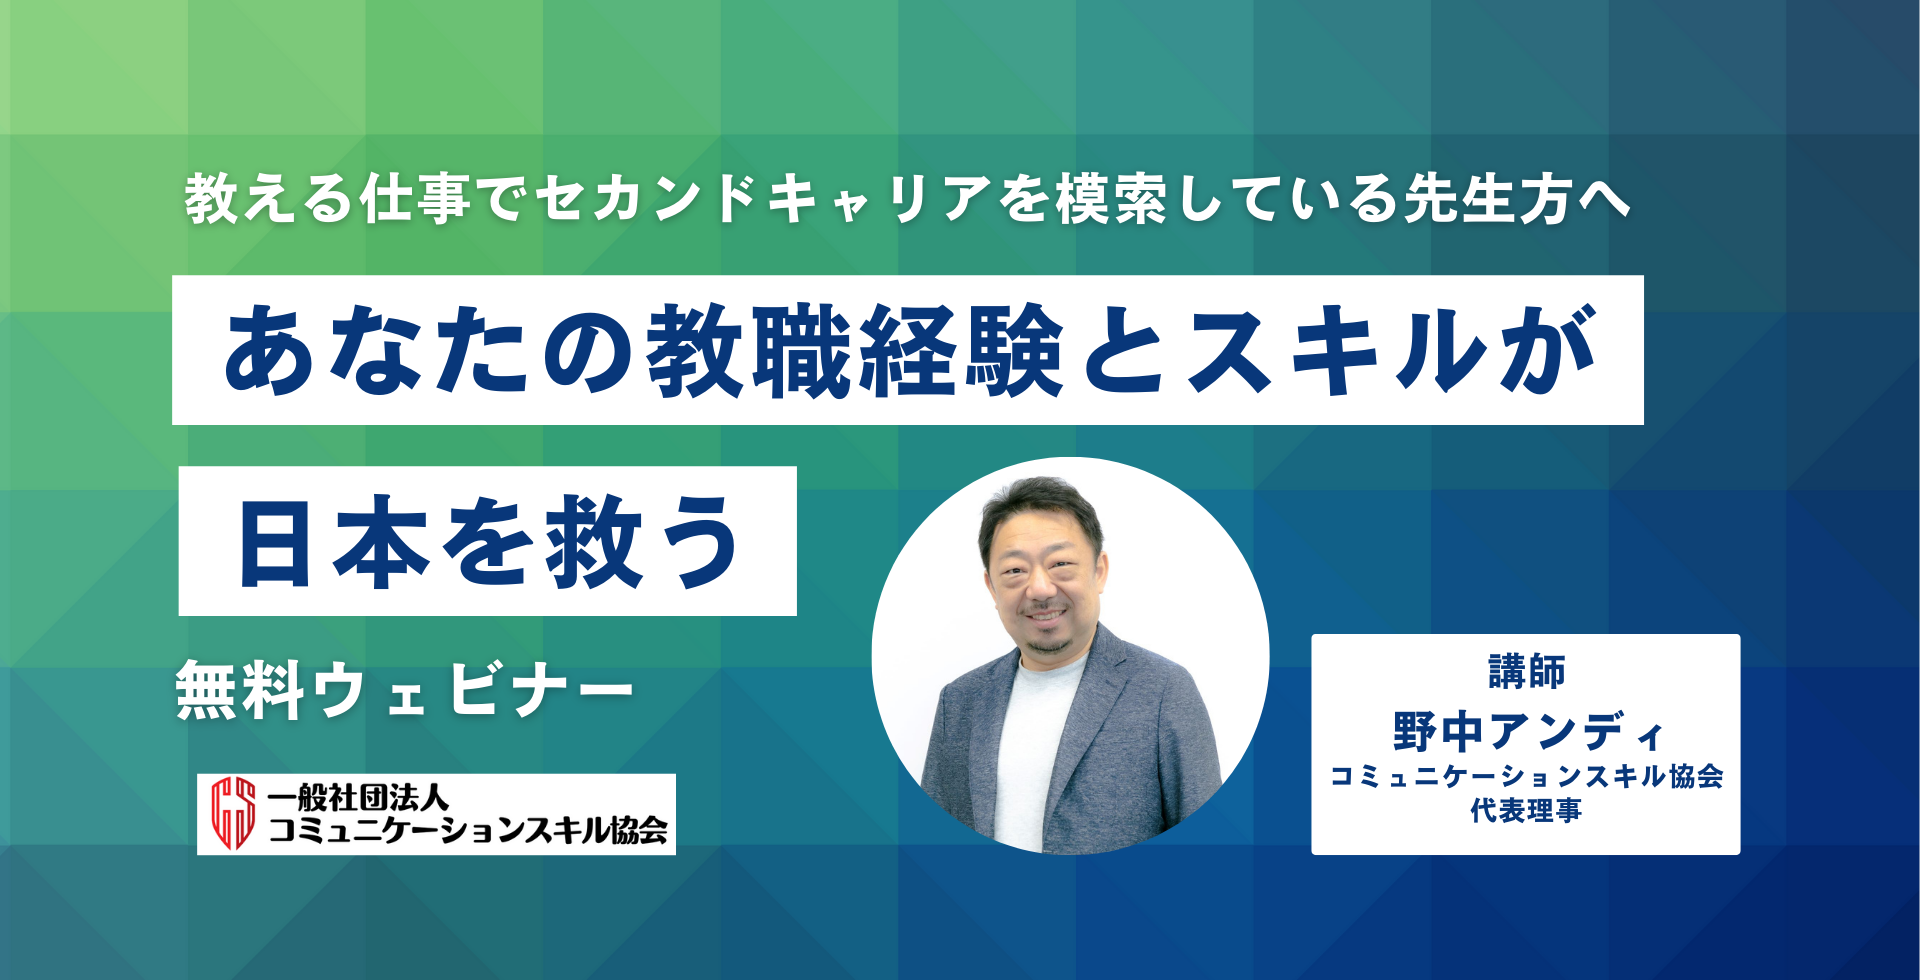 【無料ウェビナー】あなたの教職経験とスキルが日本の教育を救う